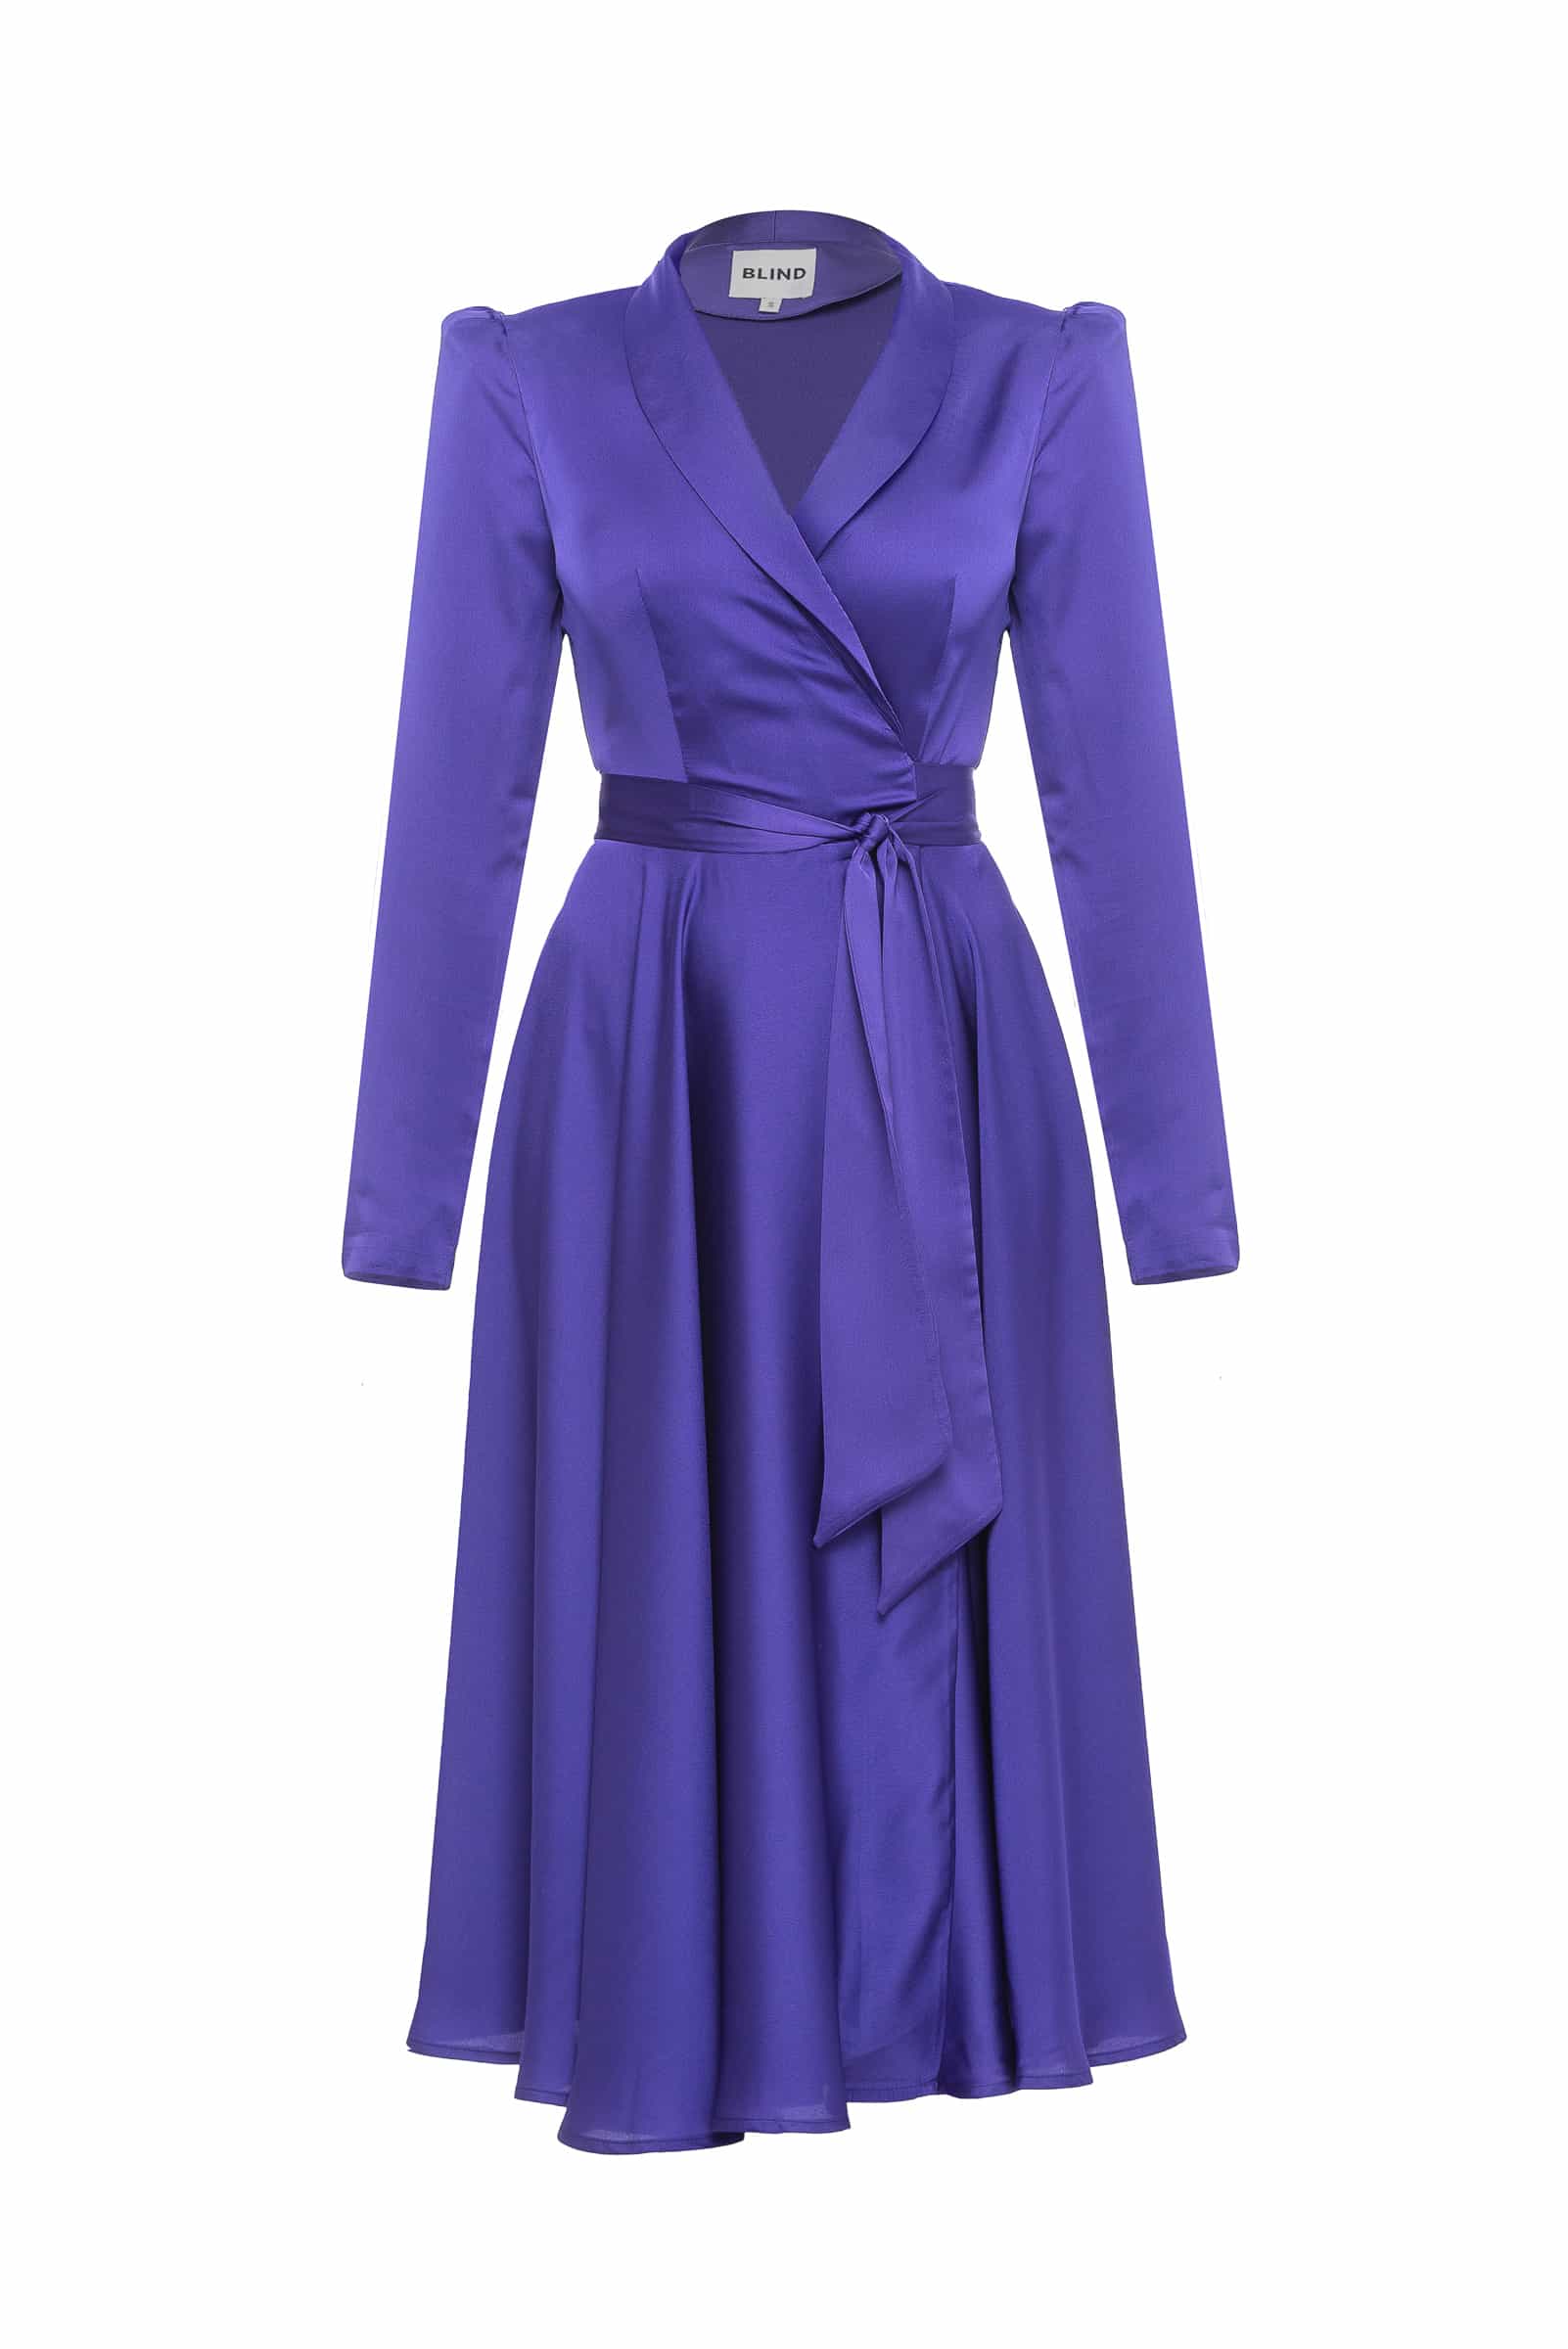 Платье фиолетовое из шелка на запах.